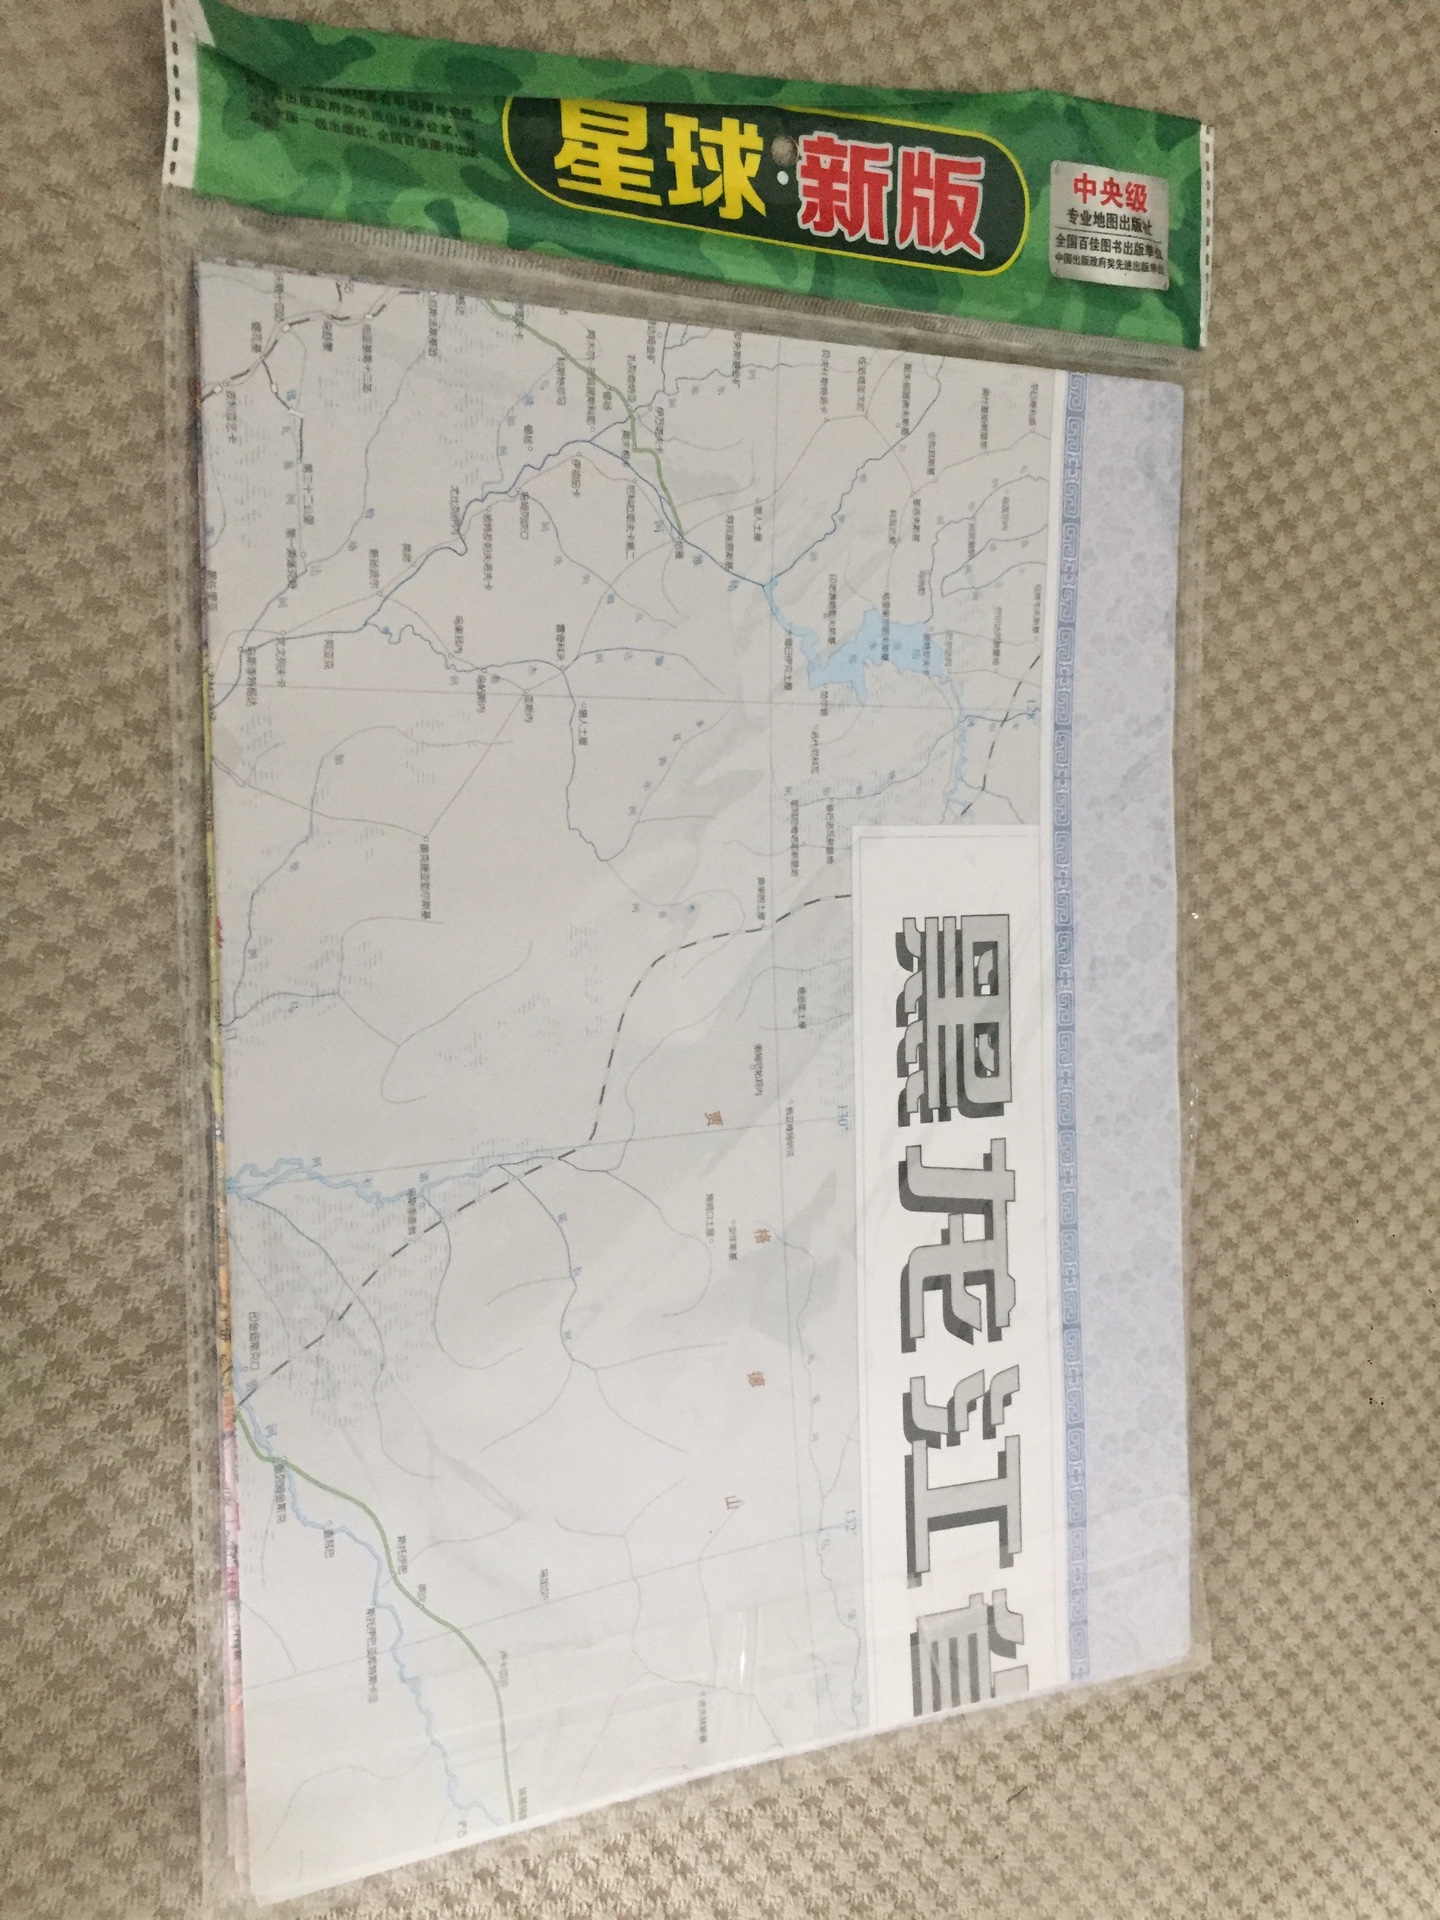 近期准备去湖北旅行，备一个纸质地图，方便，直观